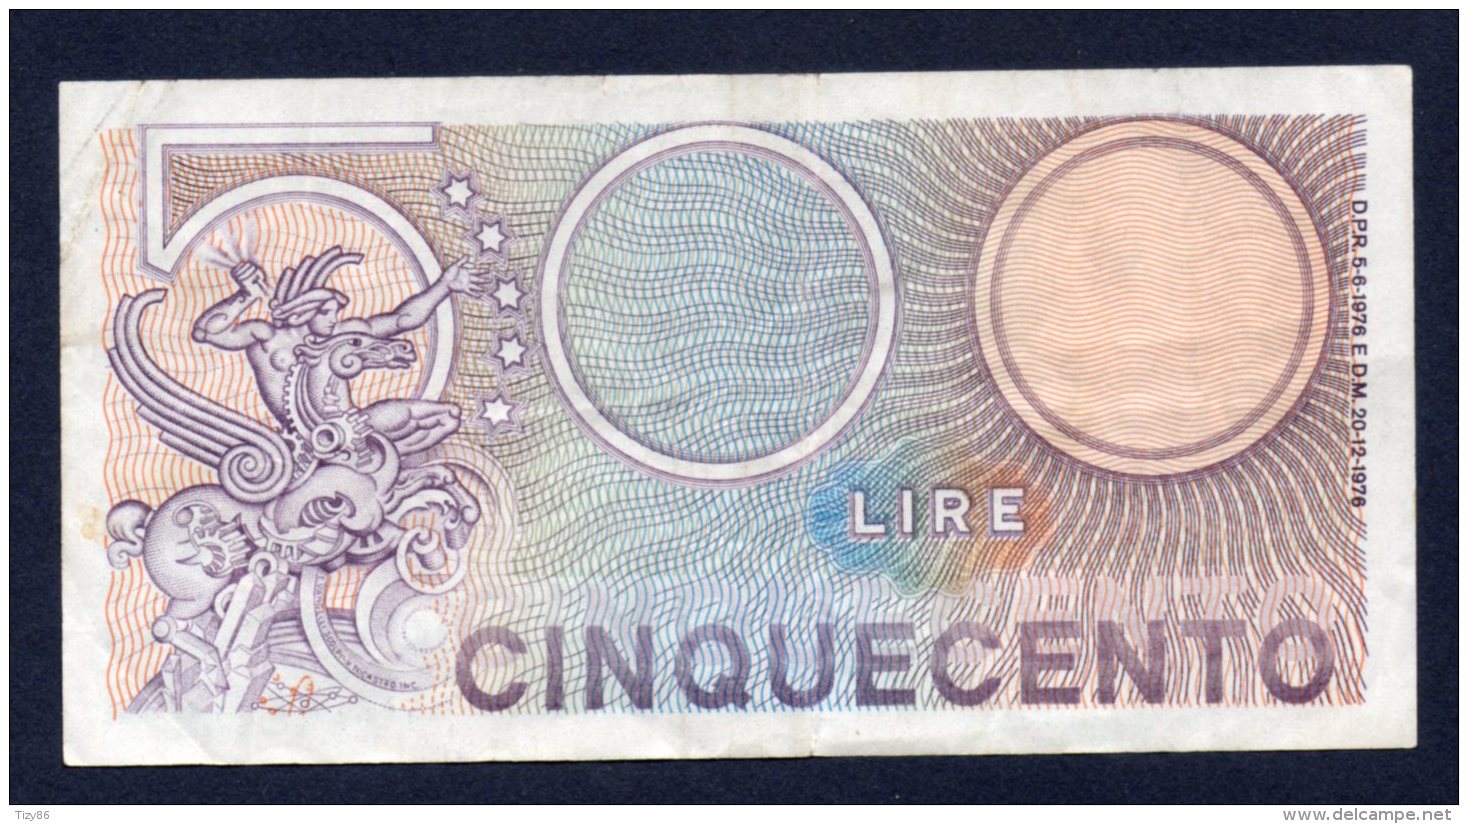 Banconota Italia - 500 Lire Mercurio 20/12/1976 - 500 Liras